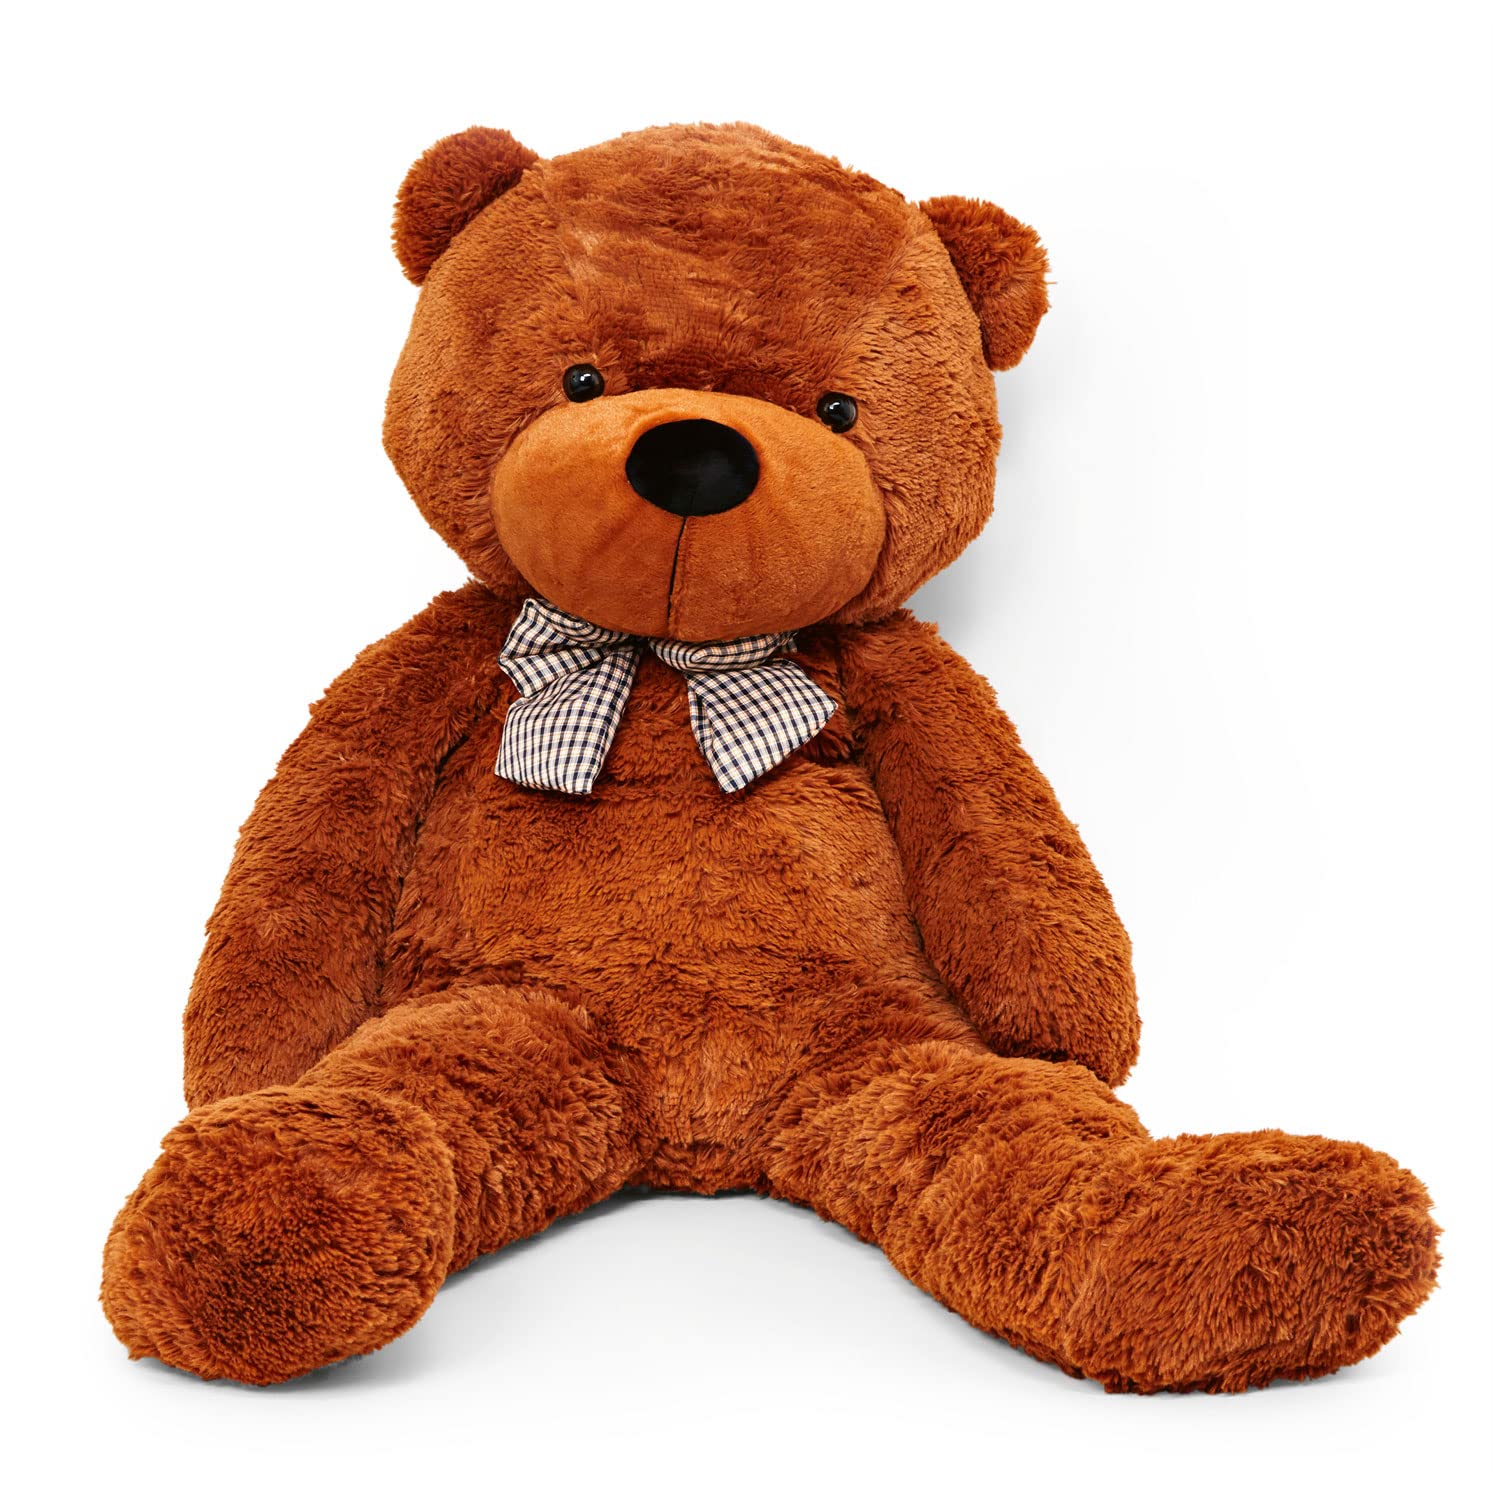 Lumaland XXL-Teddy mit Knopfaugen | Höhe: 120 cm | Süßer Jumbo-Kuschelbär aus hochwertigem Plüsch Valentinstag & Geburtstag | Eine Freude für Jung & Alt | Schadstoffgeprüft